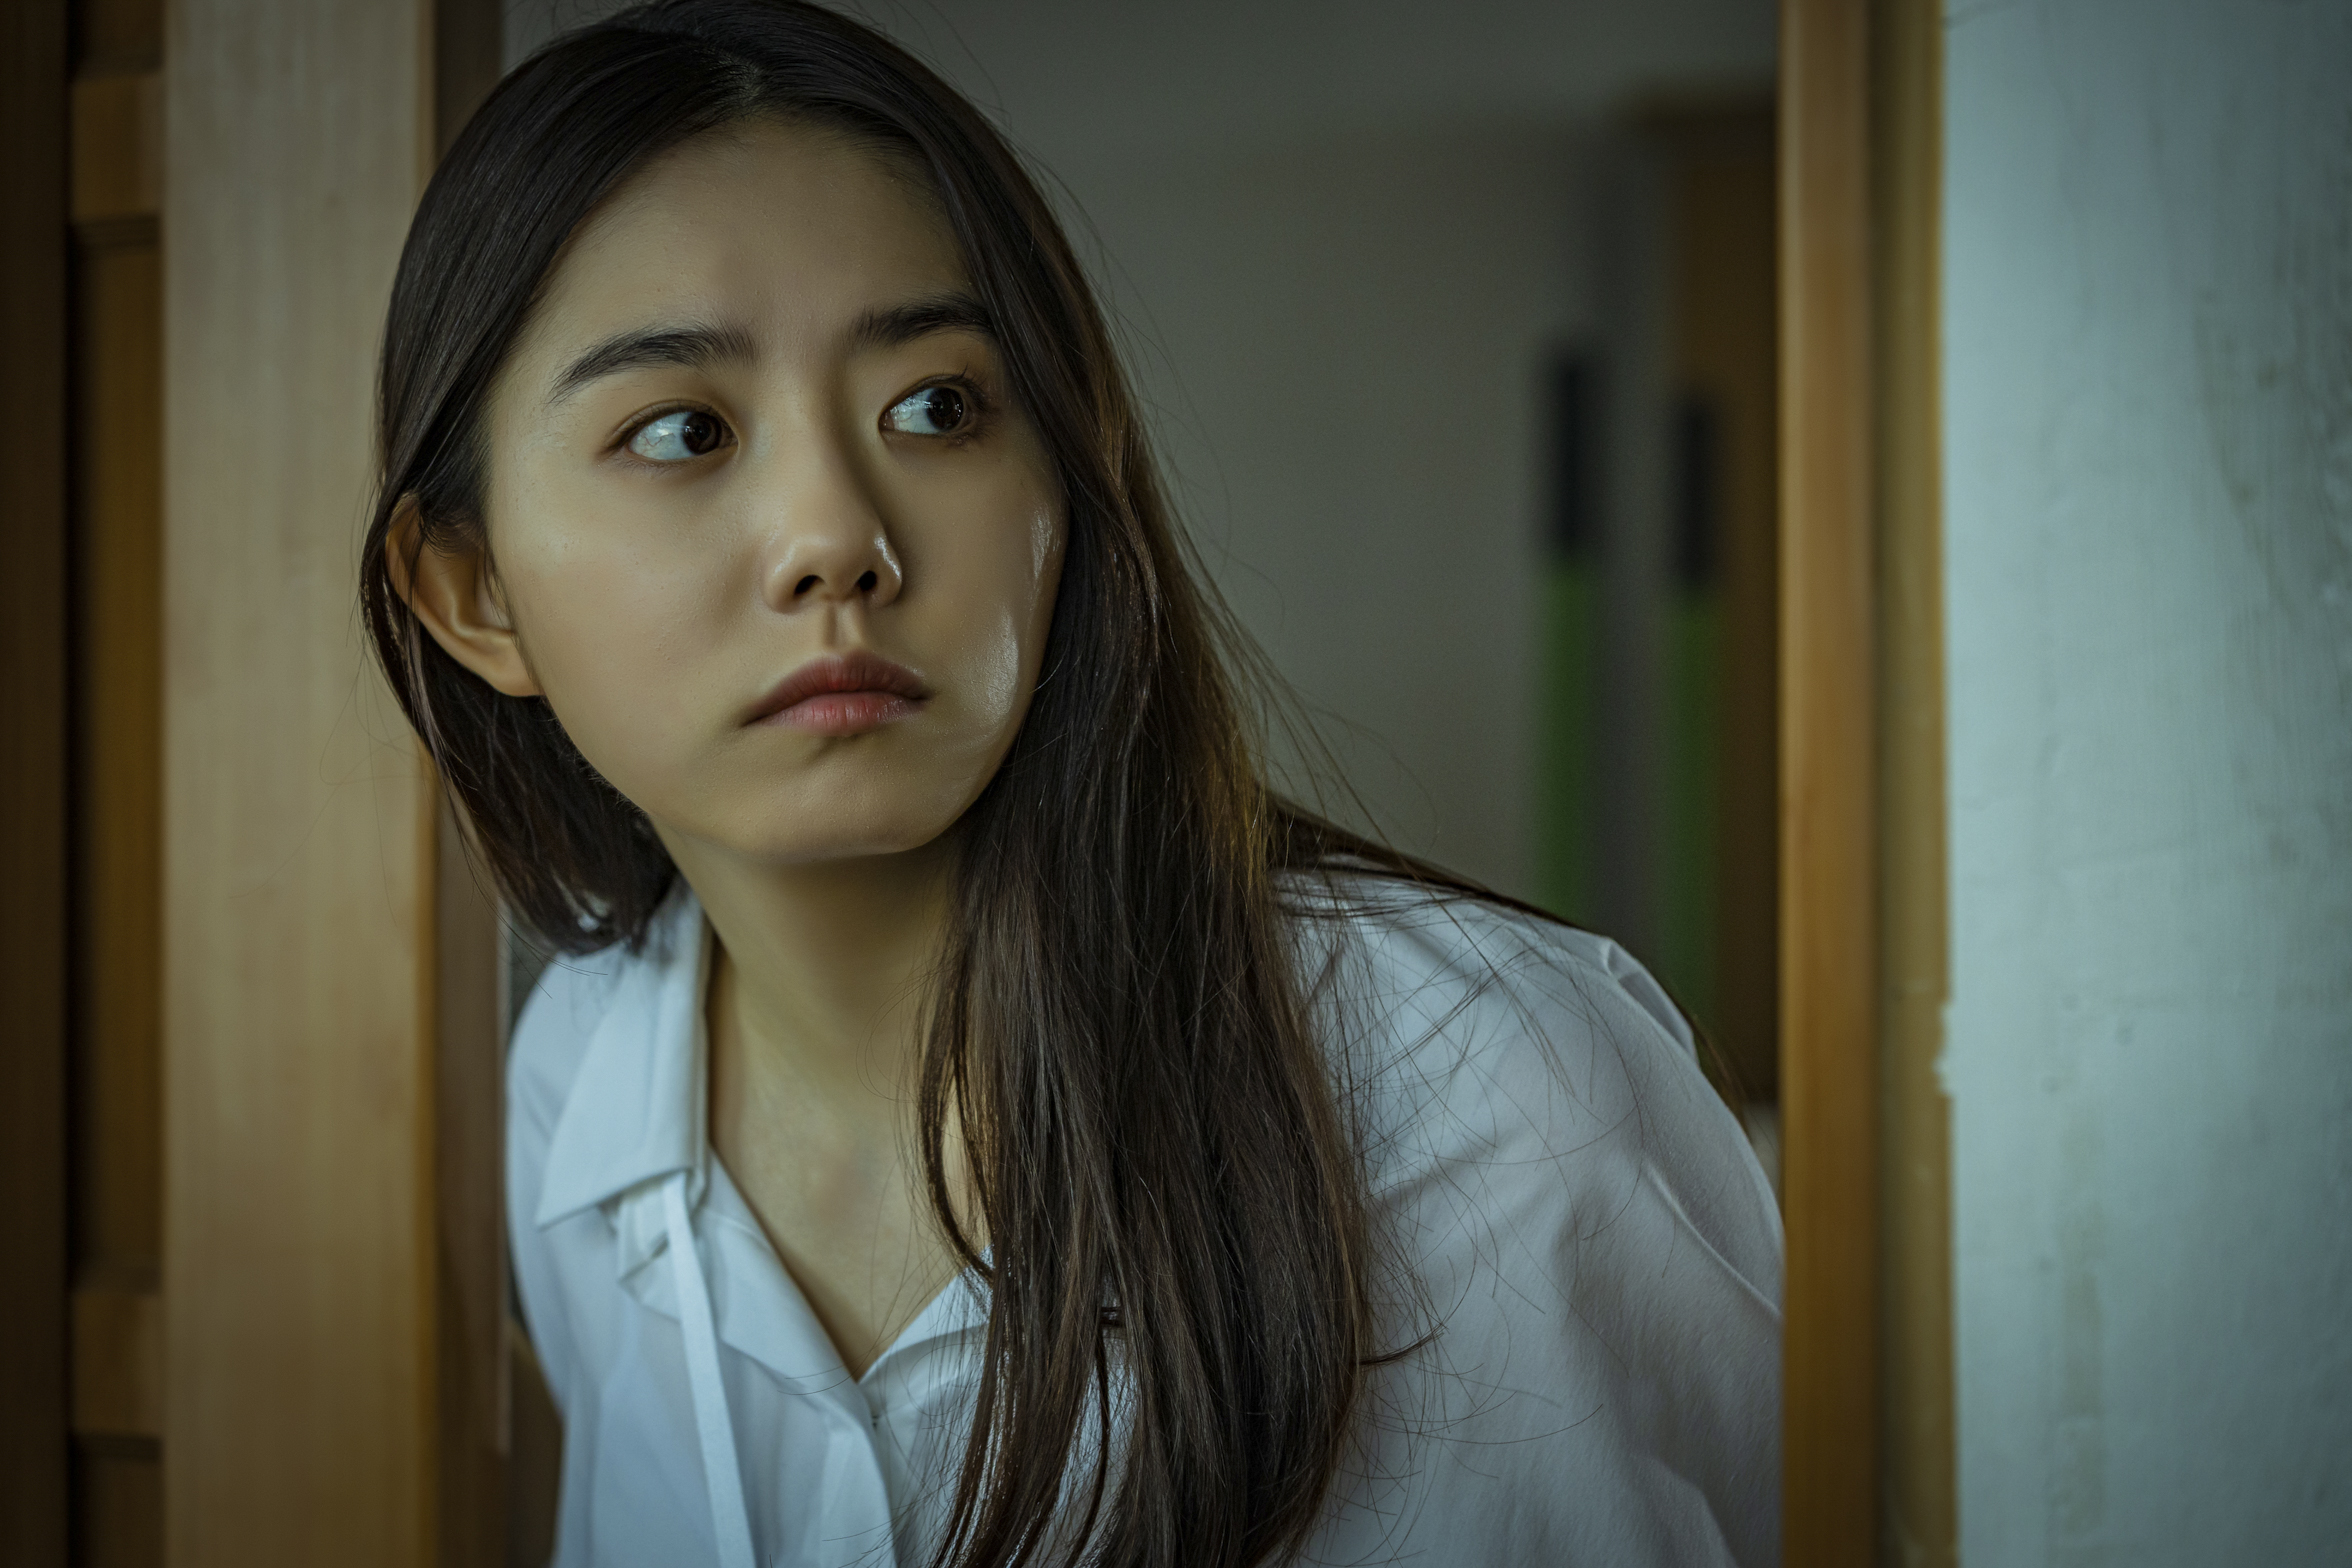 Sao K-pop bị ám trong tựa phim kinh dị lấy bối cảnh lớp học kinh hoàng